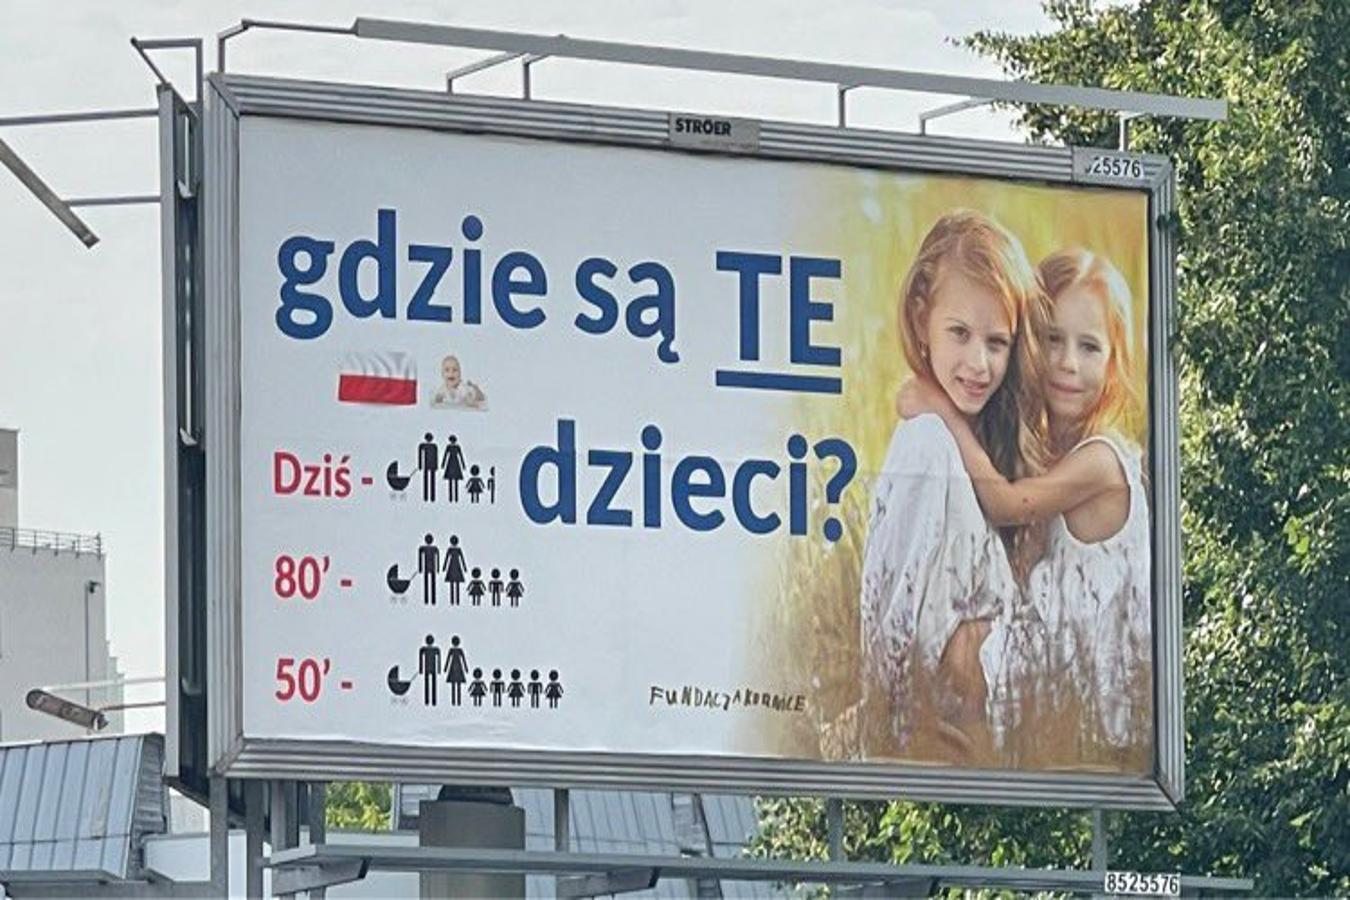 Tysiące billboardów z pytaniem: “Gdzie te dzieci?” Kontrowersyjna kampania zalewa Polskę. Jaki jest jej cel?